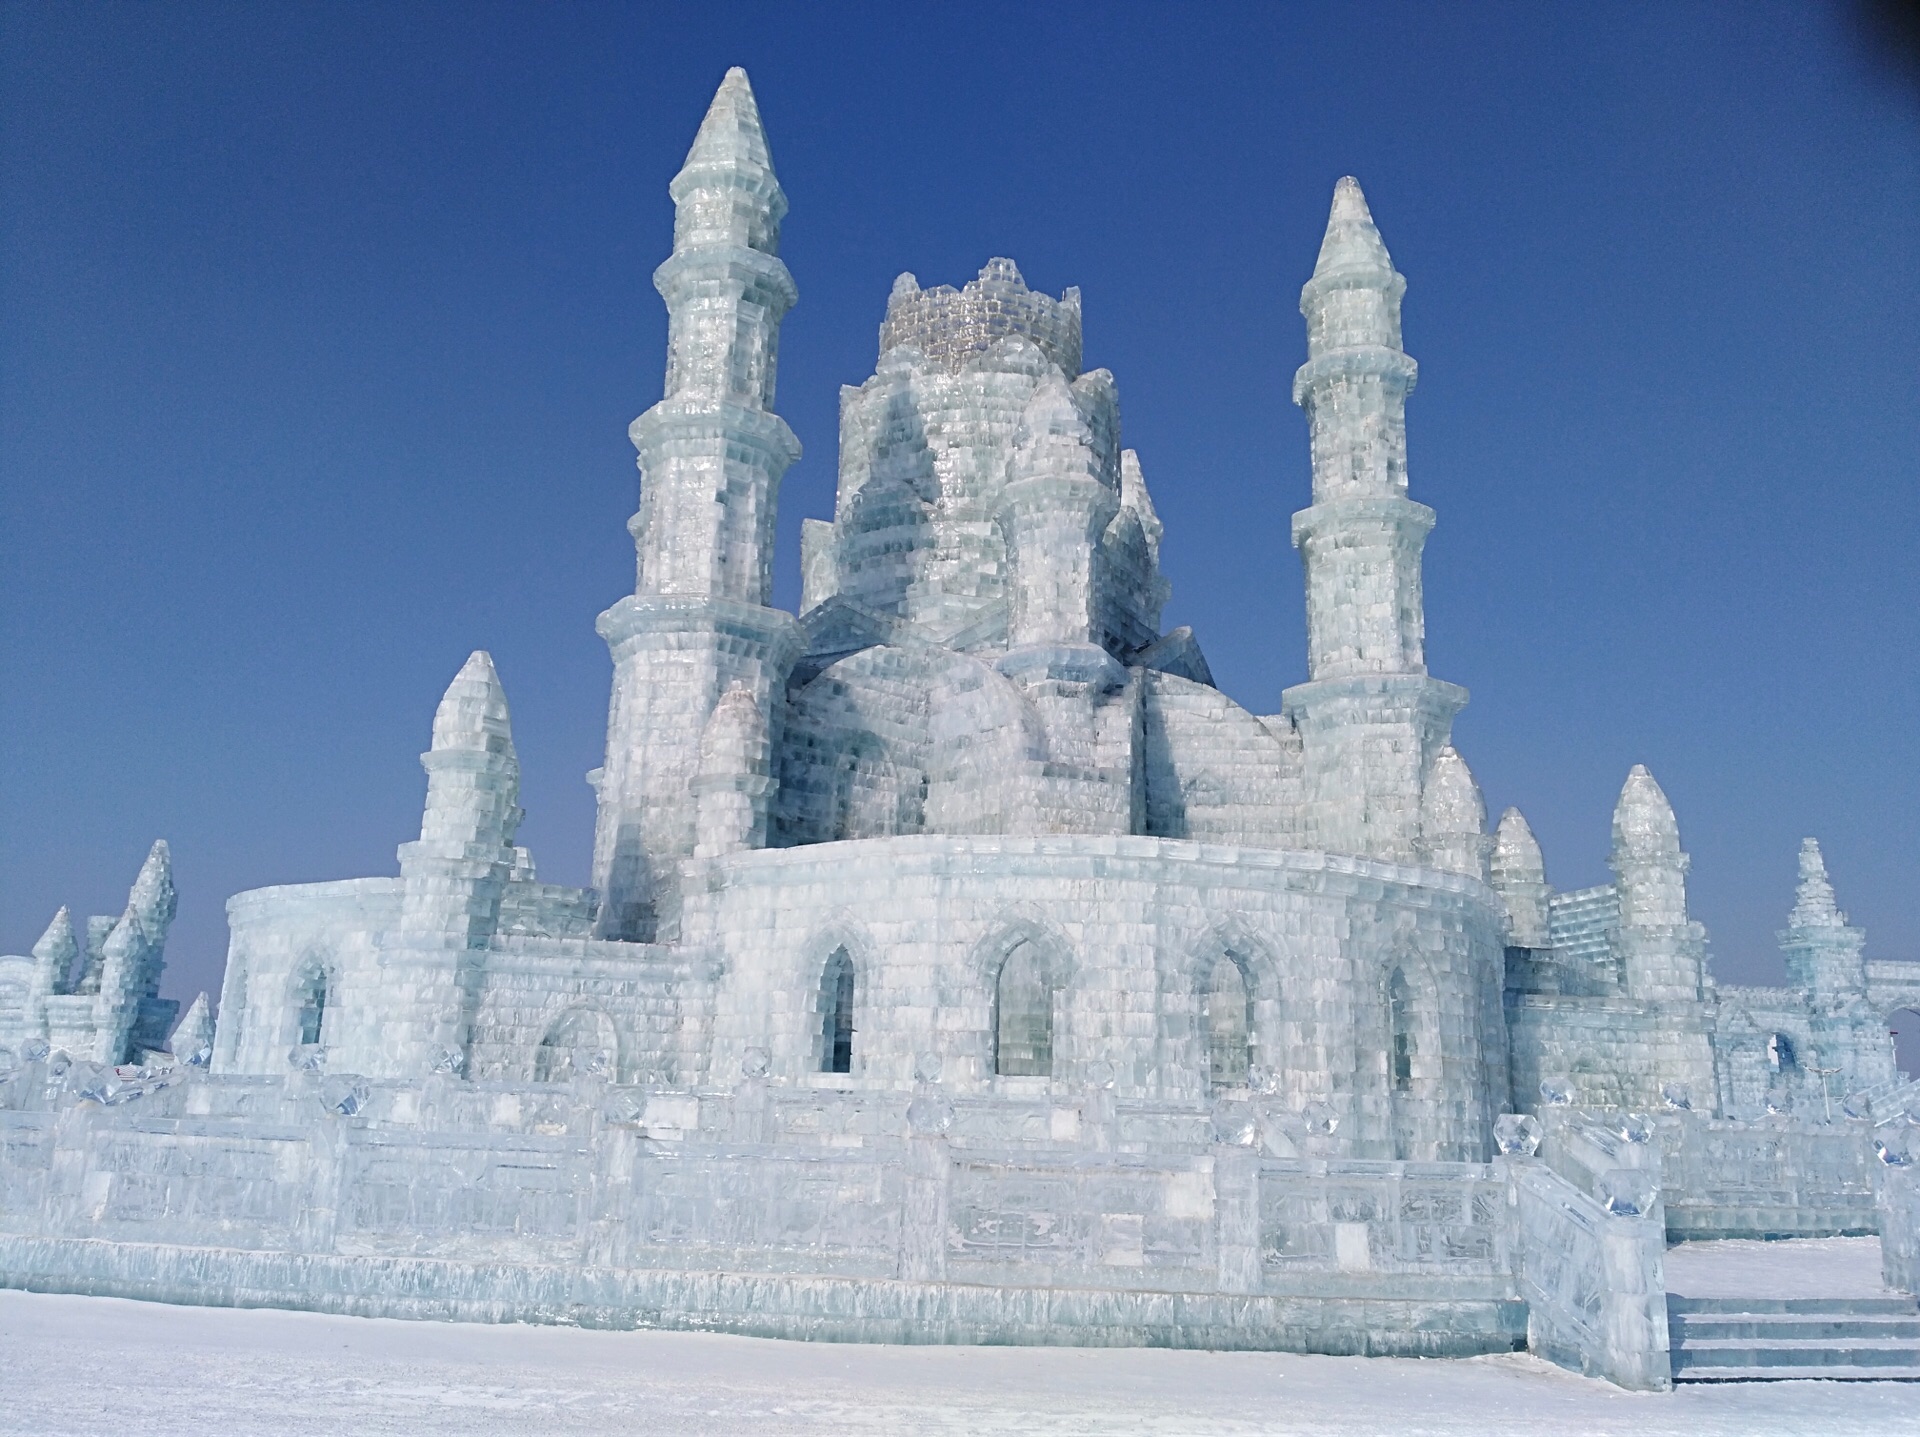 【携程攻略】哈尔滨哈尔滨冰雪大世界景点,冰雕、雪雕、冰灯、冰滑梯，真的是让人眼花缭乱～白天和夜间执行不同…